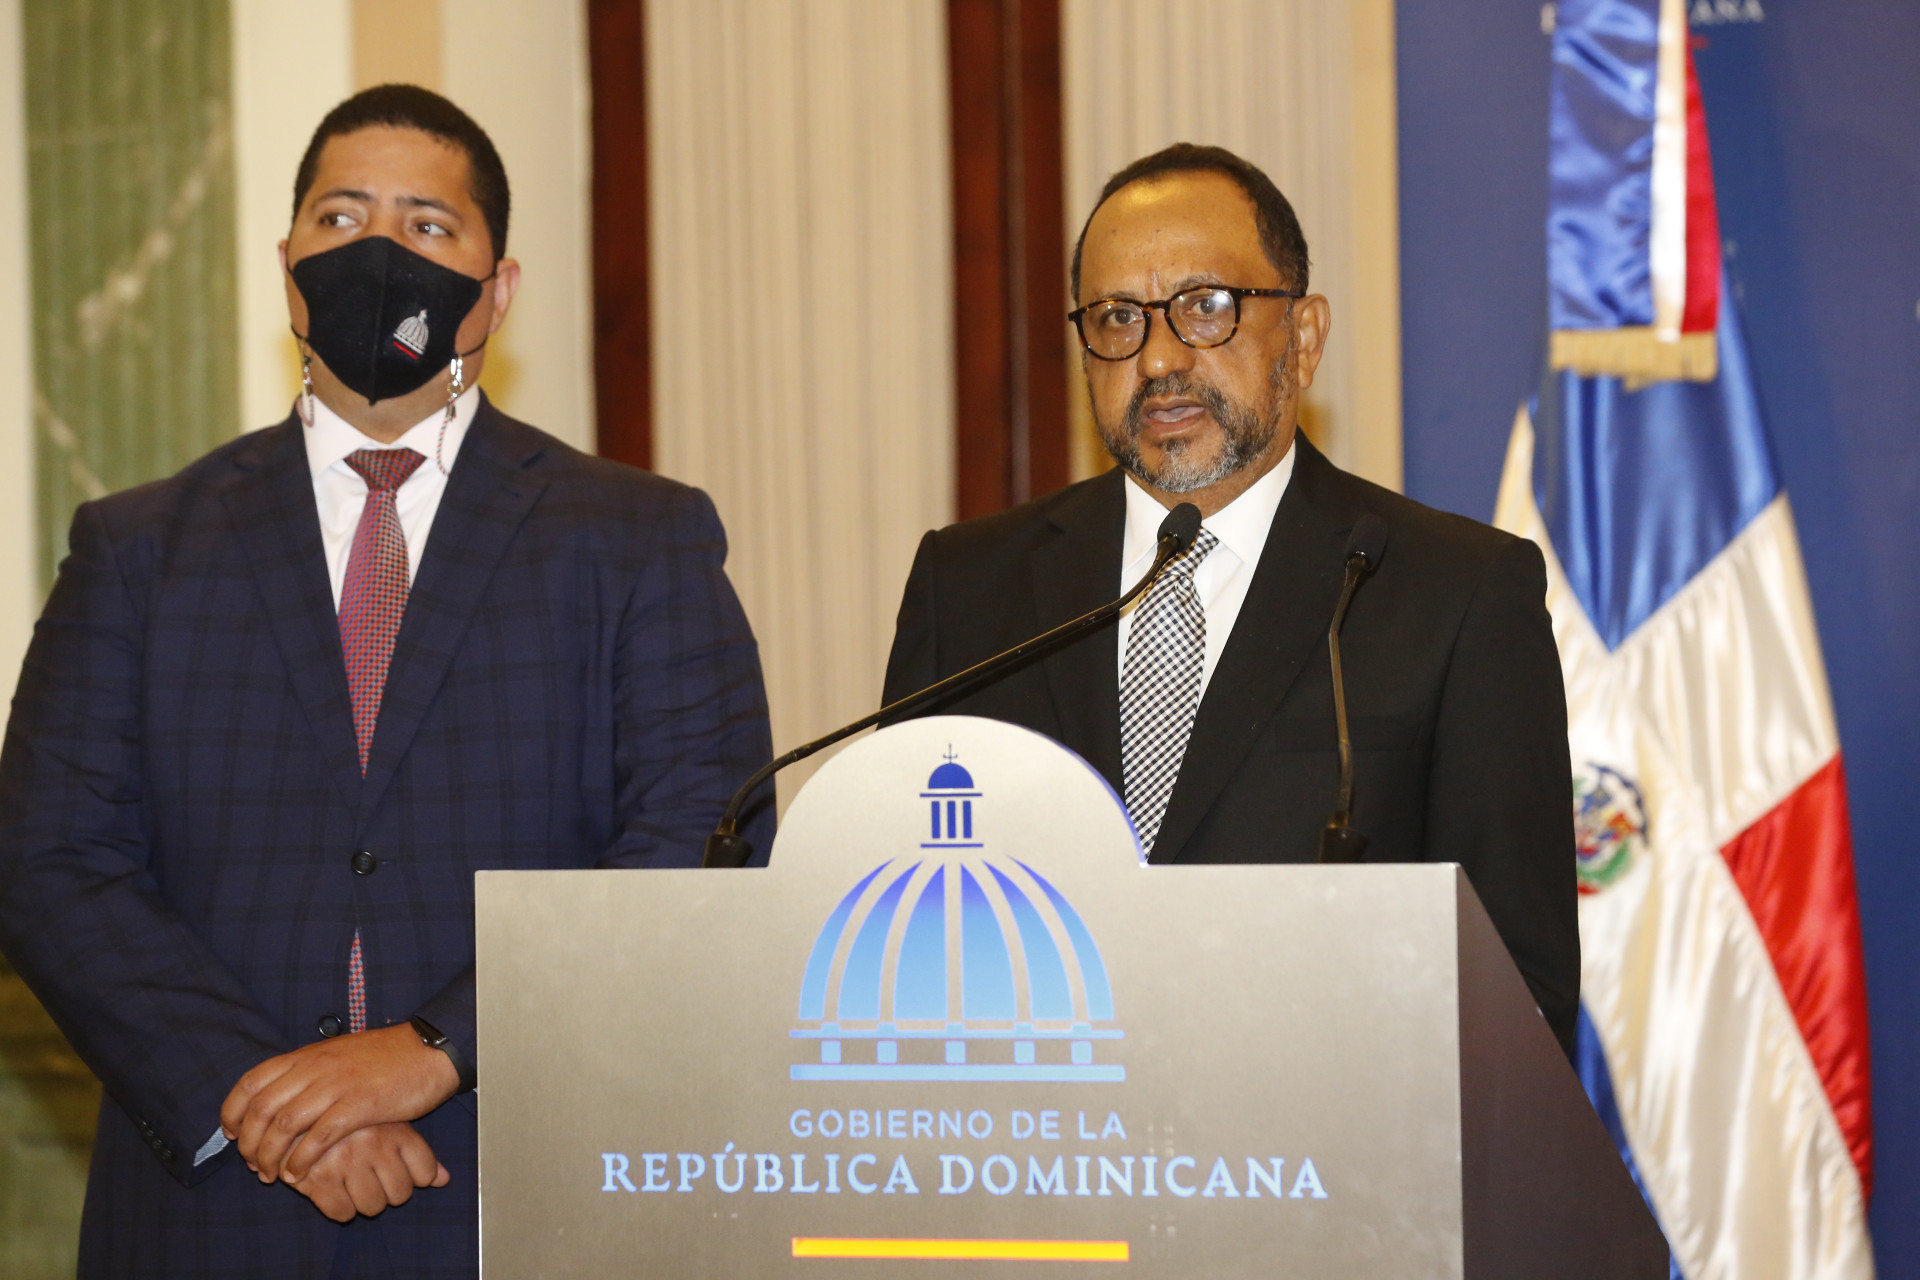 REPÚBLICA DOMINICANA: Presidente Abinader convoca al Consejo Nacional de la Magistratura